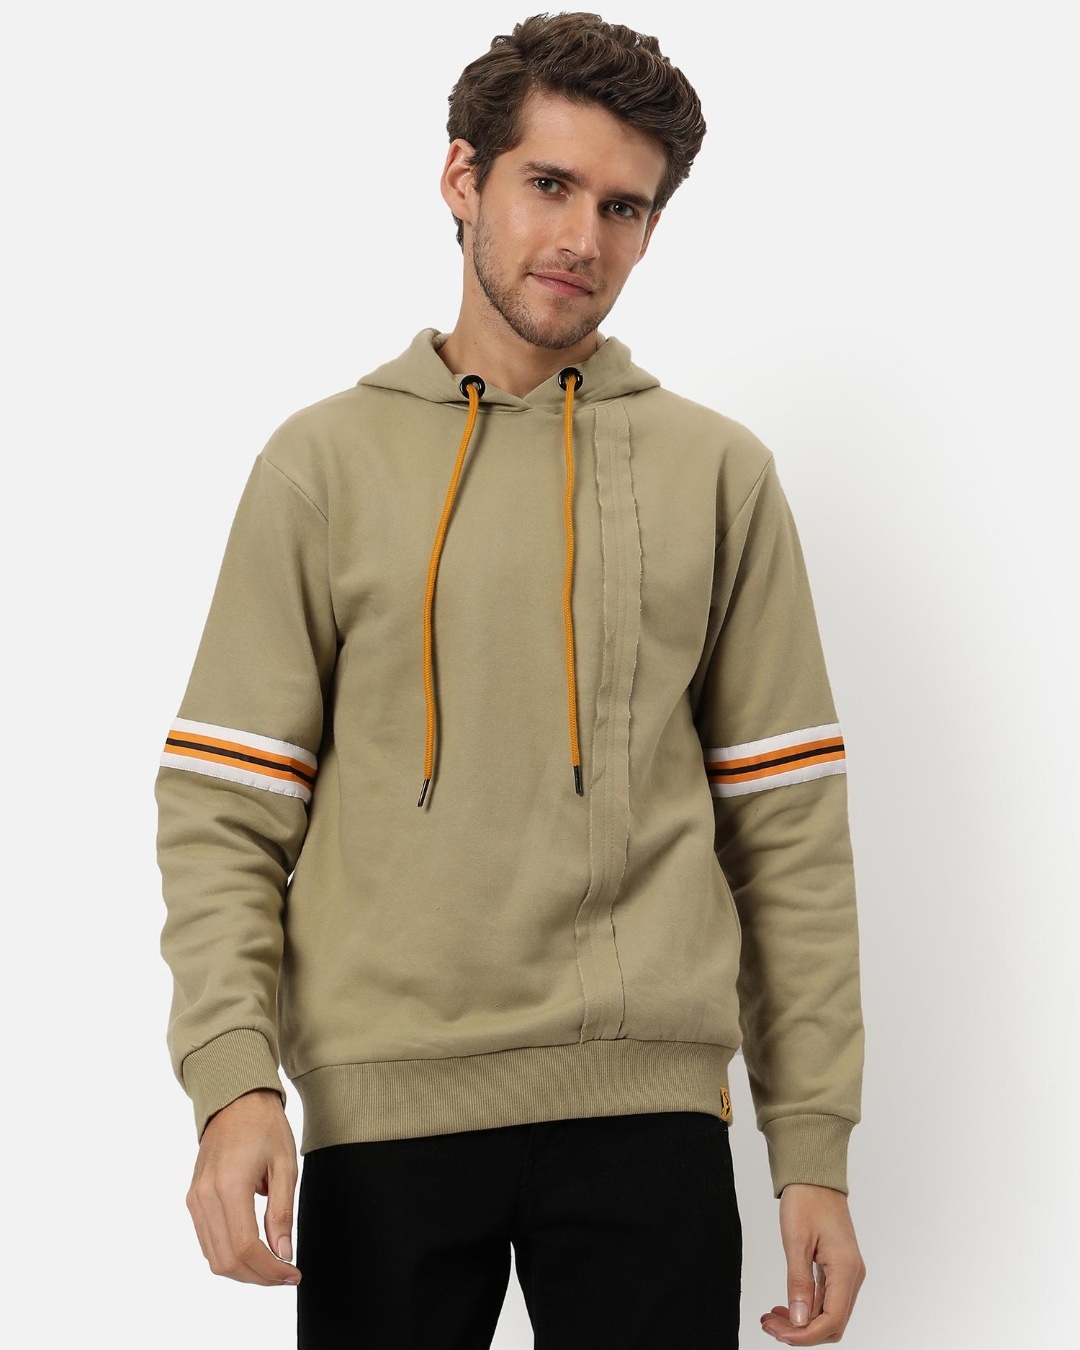 Buy Men's Beige Hooded Sweatshirt Online at Bewakoof